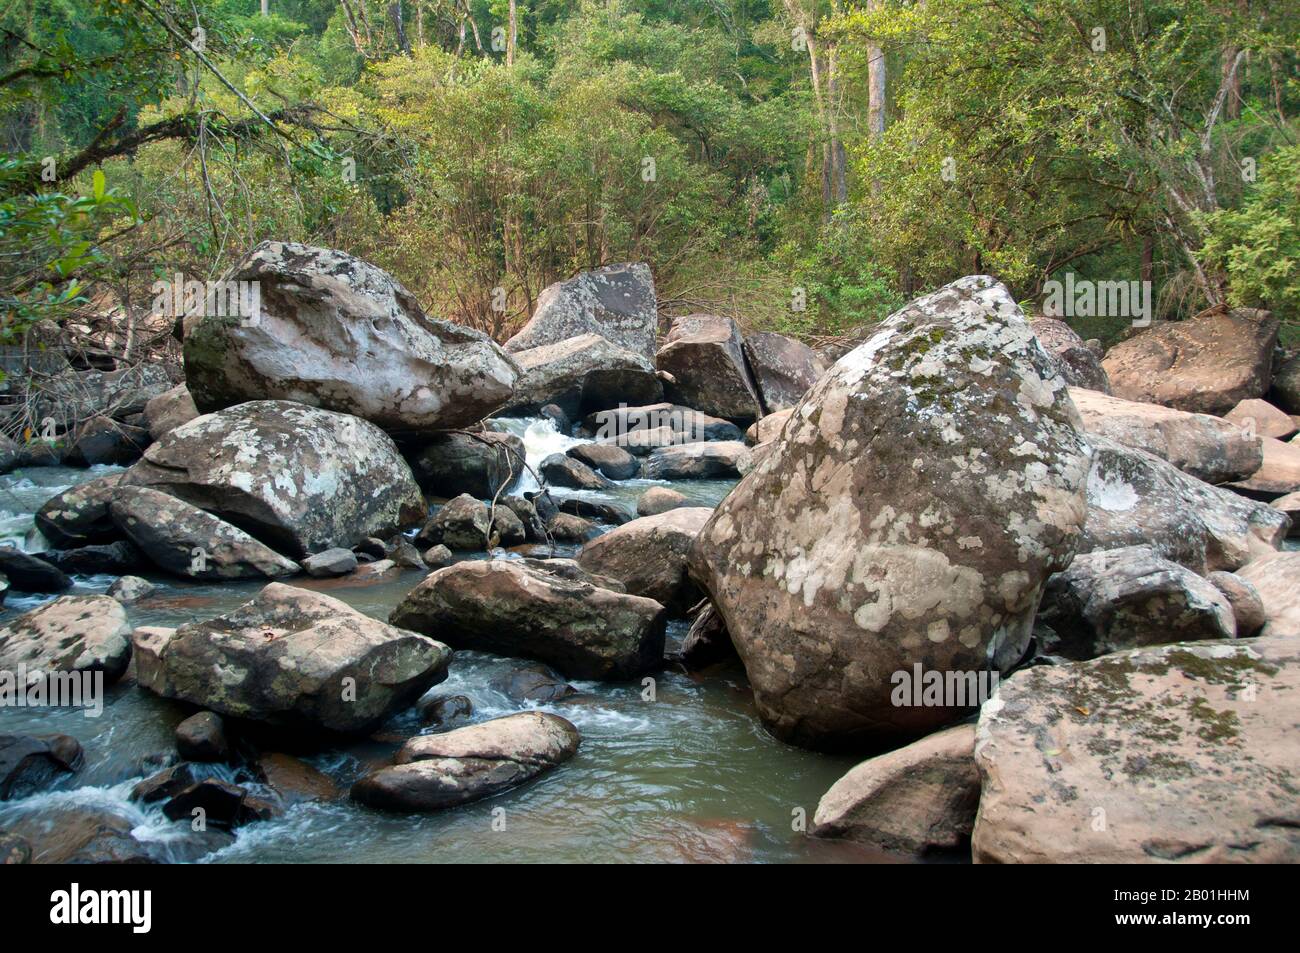 Thailand: Tat Huang Wasserfall (Namtok Nam Hueang), auch bekannt als Thai-Lao Wasserfall oder internationaler Wasserfall, Phu Suan Sai Nationalpark, Provinz Loei. Die Provinz Loei befindet sich im oberen Nordosten Thailands. Die benachbarten Provinzen sind (von Osten nach rechts) Nong Khai, Udon Thani, Nongbua Lamphu, Khon Kaen, Phetchabun, Phitsanulok. Im Norden grenzt sie an die Provinzen Xaignabouli und Vientiane in Laos. Die Provinz ist von niedrigen Bergen bedeckt, während die Hauptstadt Loei in einem fruchtbaren Becken liegt. Der Fluss Loei, der durch die Provinz fließt, ist ein Nebenfluss des Mekong. Stockfoto